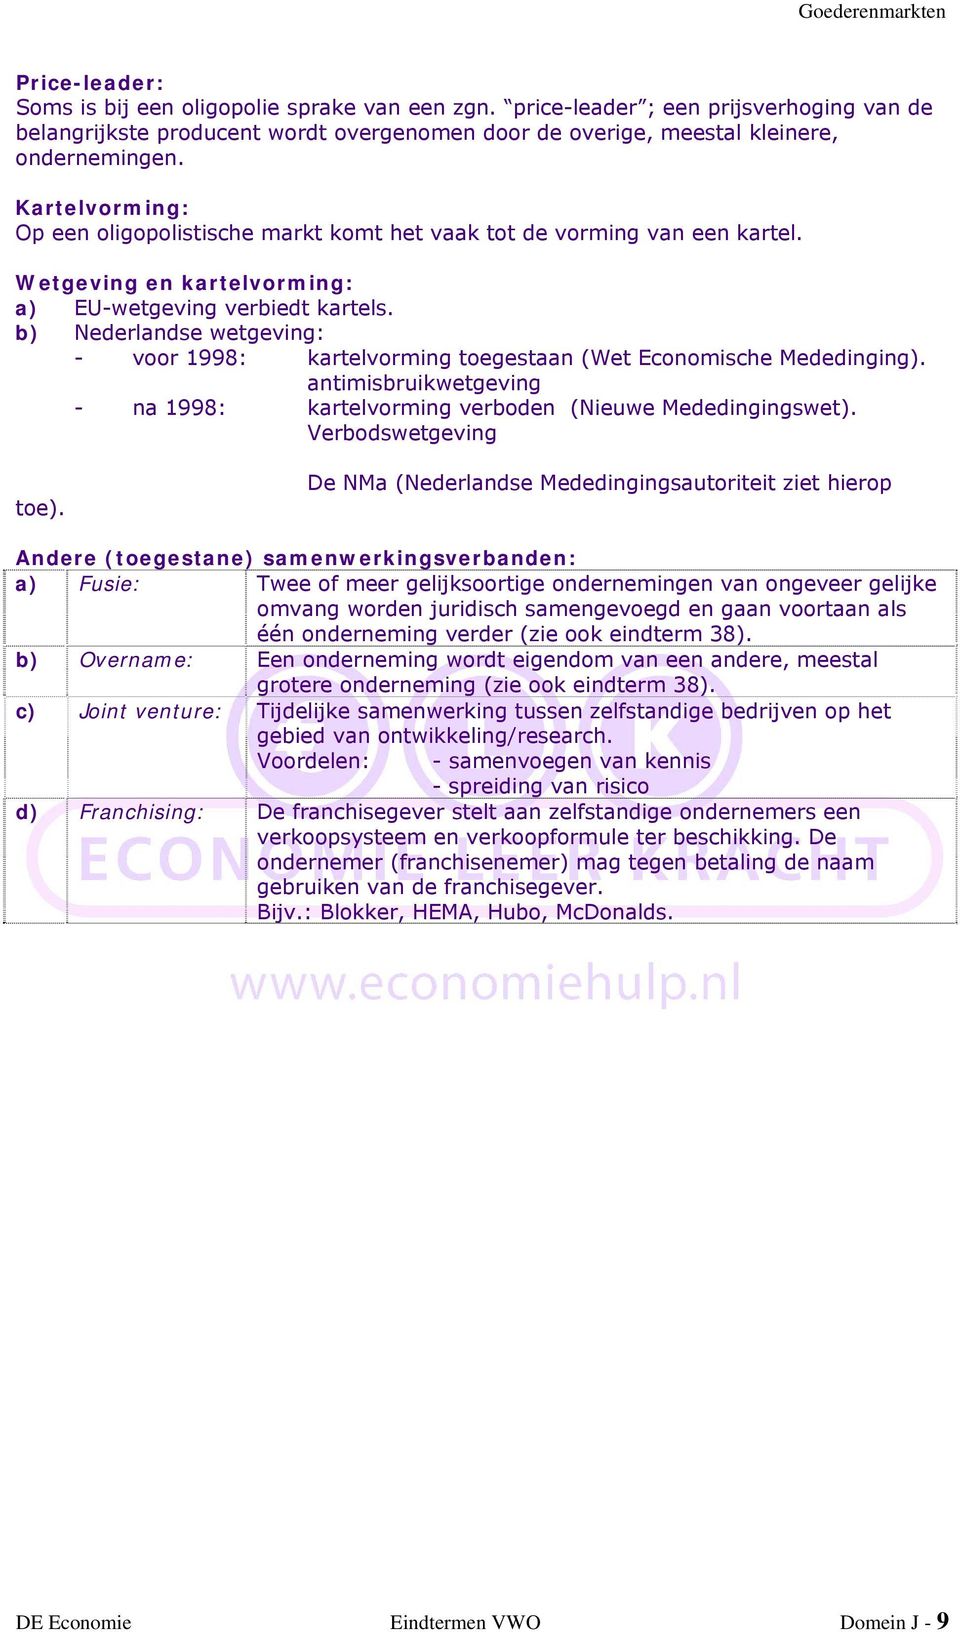 b) Nederlandse wetgeving: - voor 1998: kartelvorming toegestaan (Wet Economische Mededinging). antimisbruikwetgeving - na 1998: kartelvorming verboden (Nieuwe Mededingingswet). Verbodswetgeving toe).